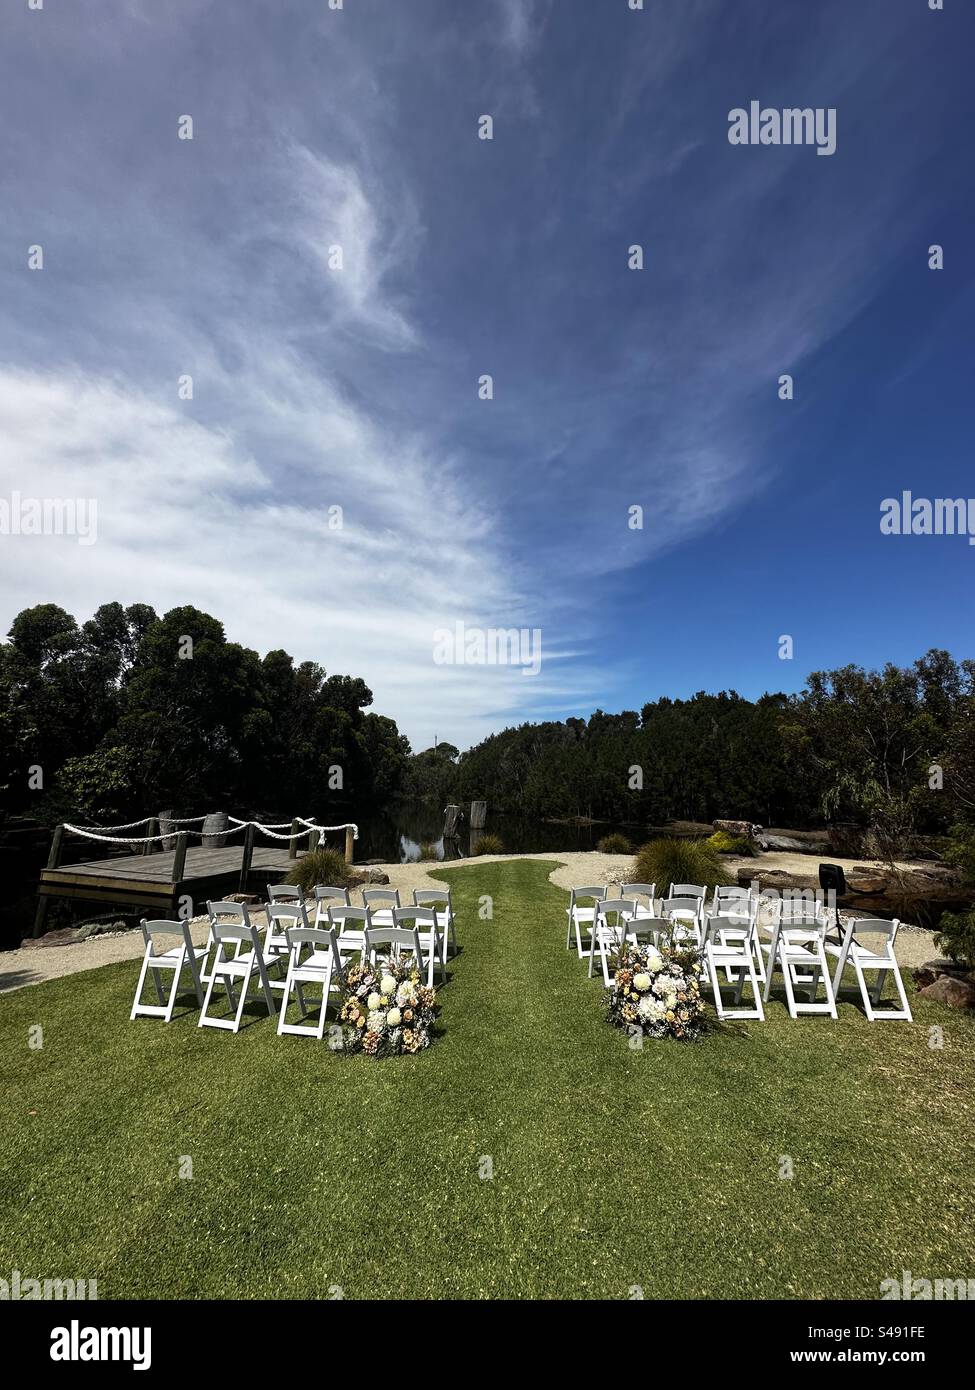 Cerimonia di nozze organizzata sul fiume sotto un cielo blu. Fiori e sedie per matrimoni per gli ospiti pronti per iniziare la cerimonia di nozze. Foto Stock